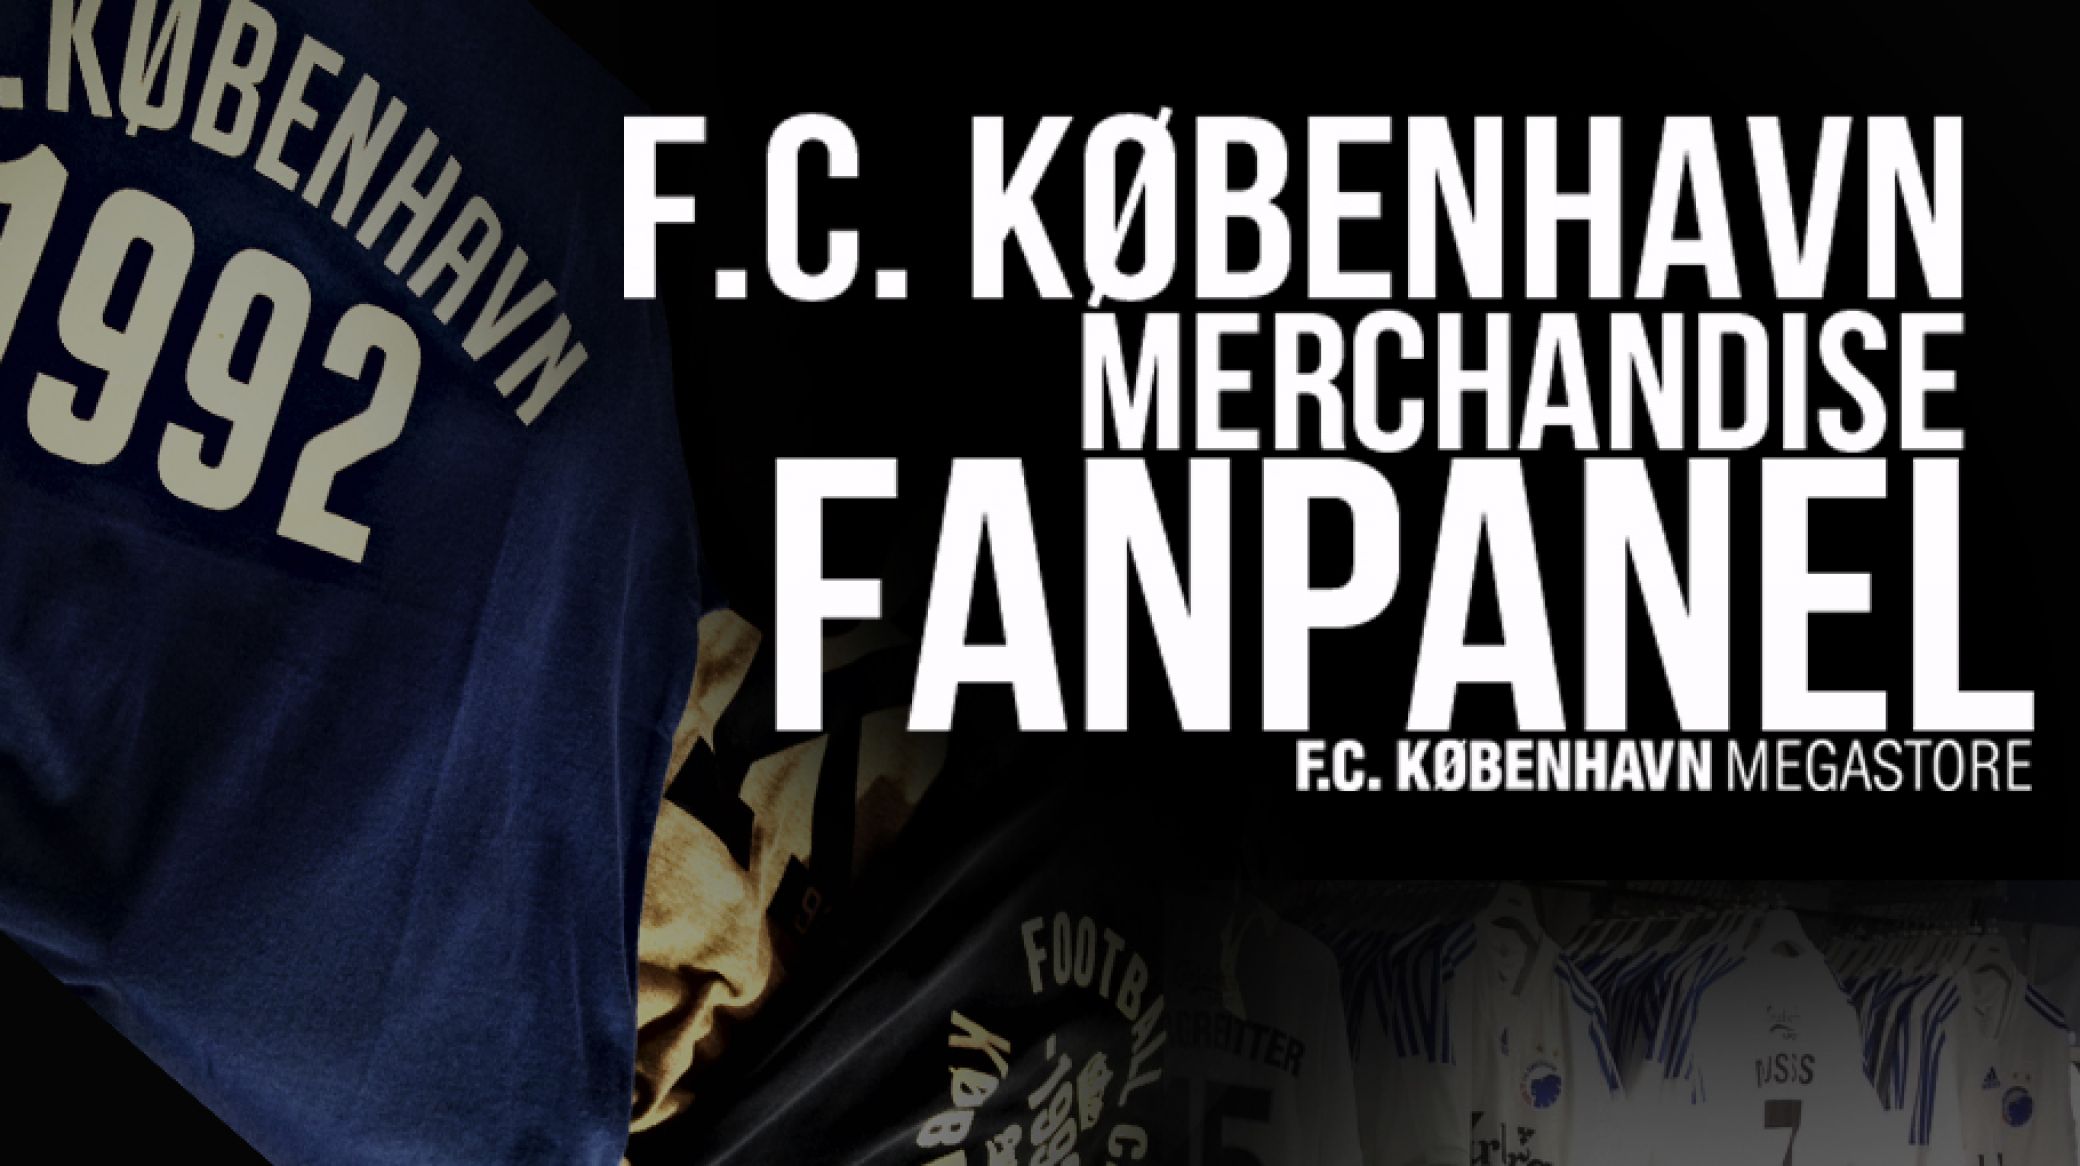 Bliv medlem af F.C. København Merchandise FANPANEL